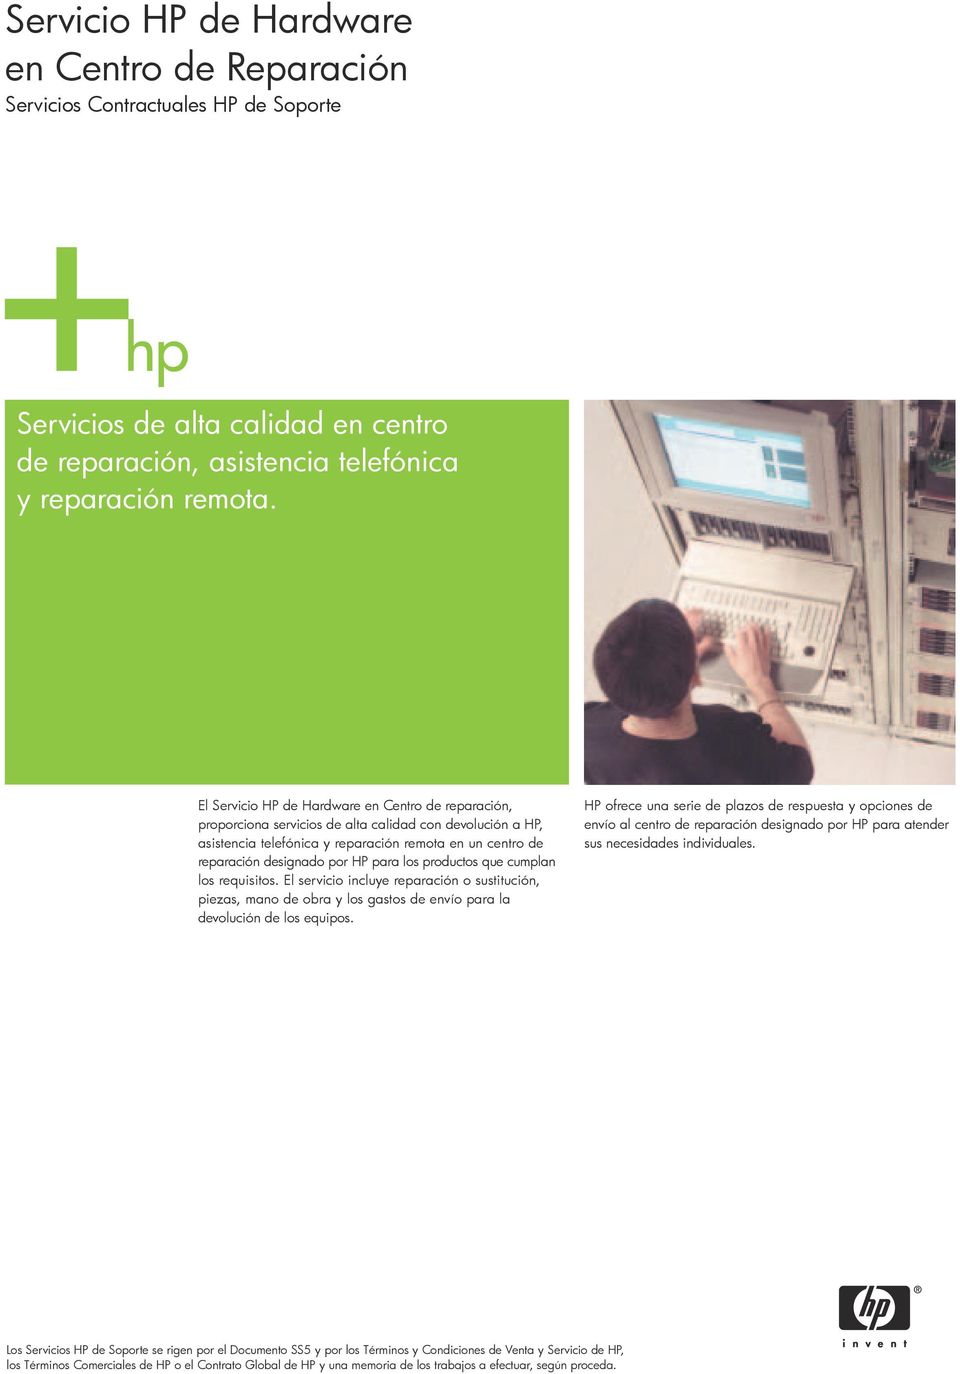 El Servicio HP de Hardware en Centro de reparación, proporciona servicios de alta calidad con devolución a HP, asistencia telefónica y reparación remota en un centro de